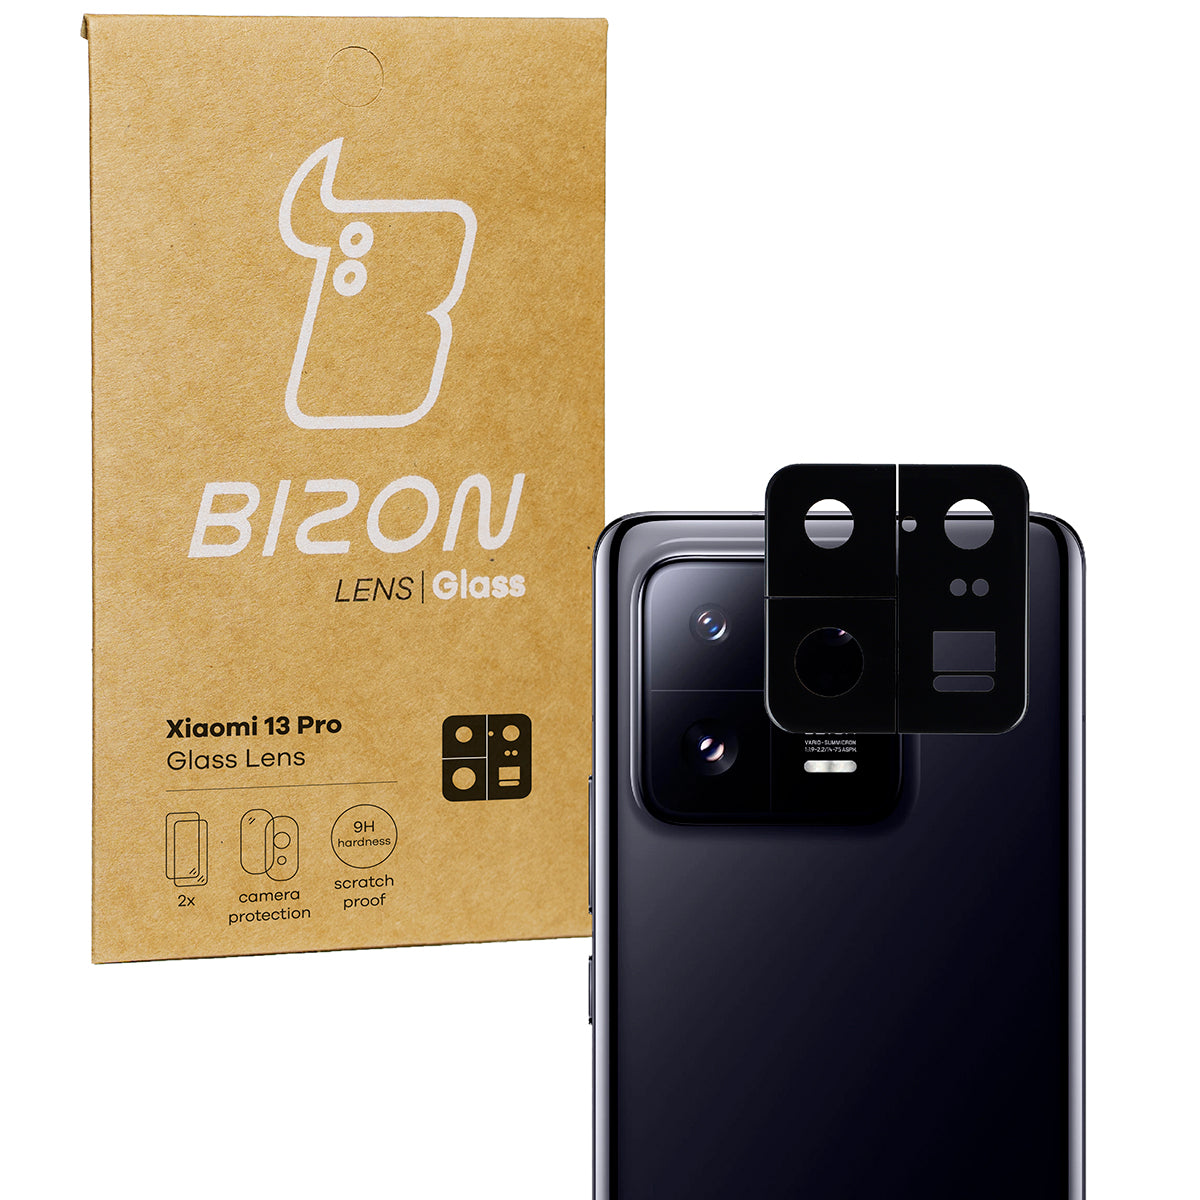 Glas für die Kamera Bizon Glass Lens für Xiaomi 13 Pro, 2 Stück